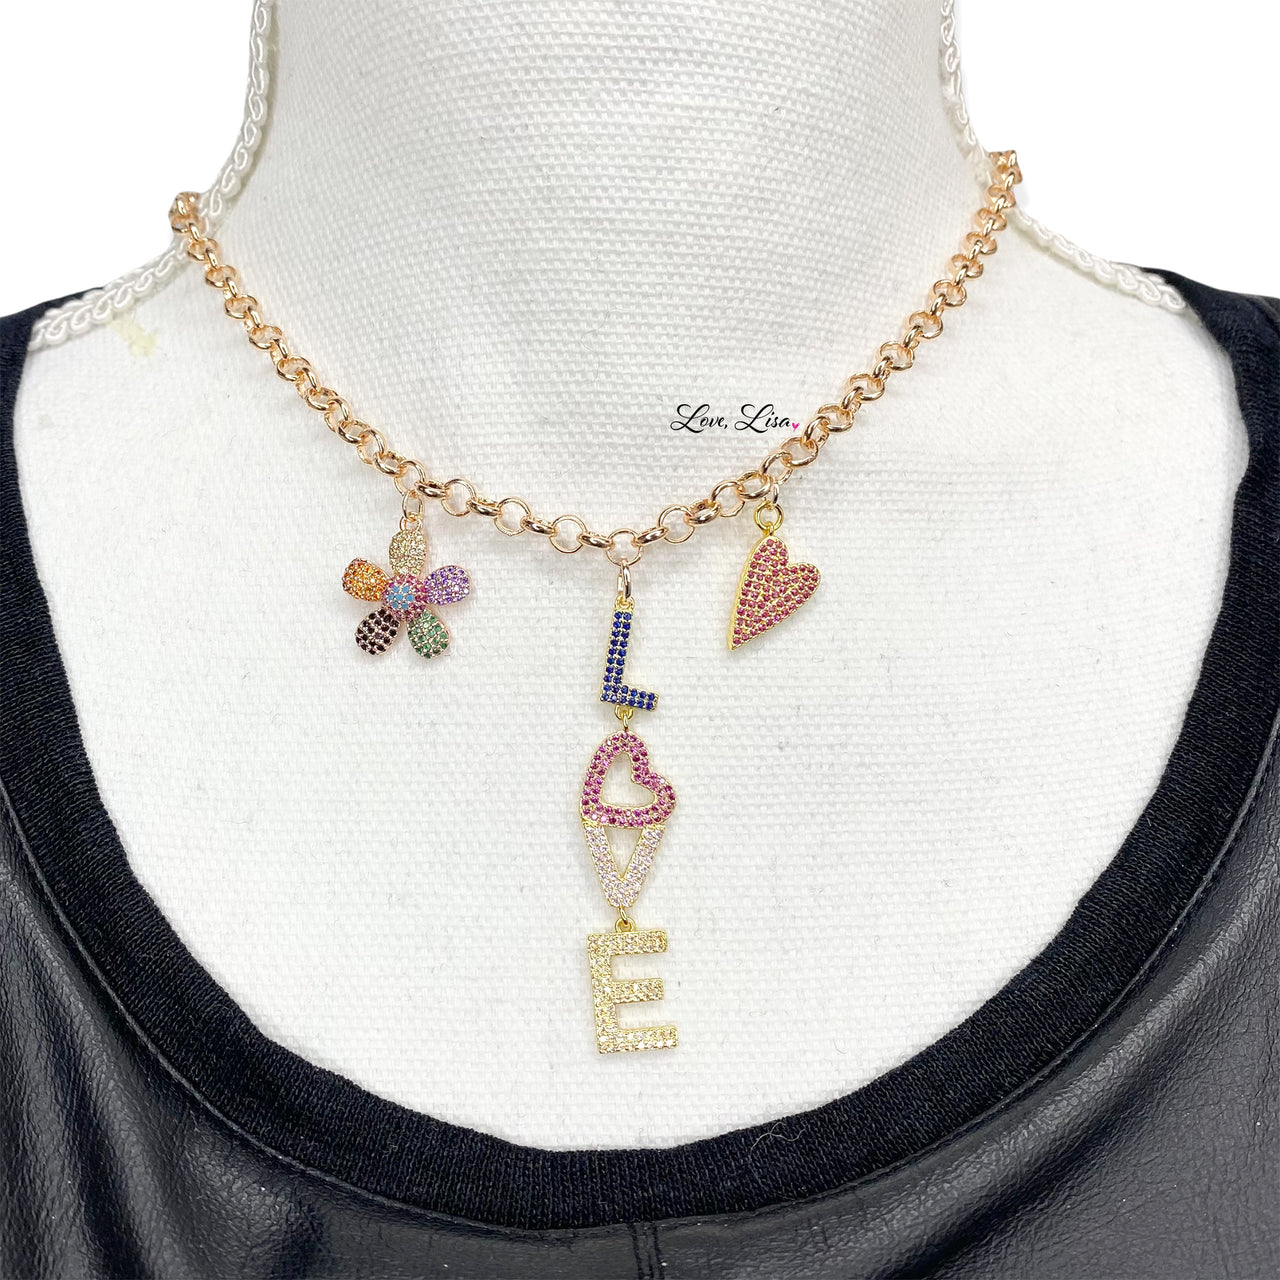 Rosie Love Necklace